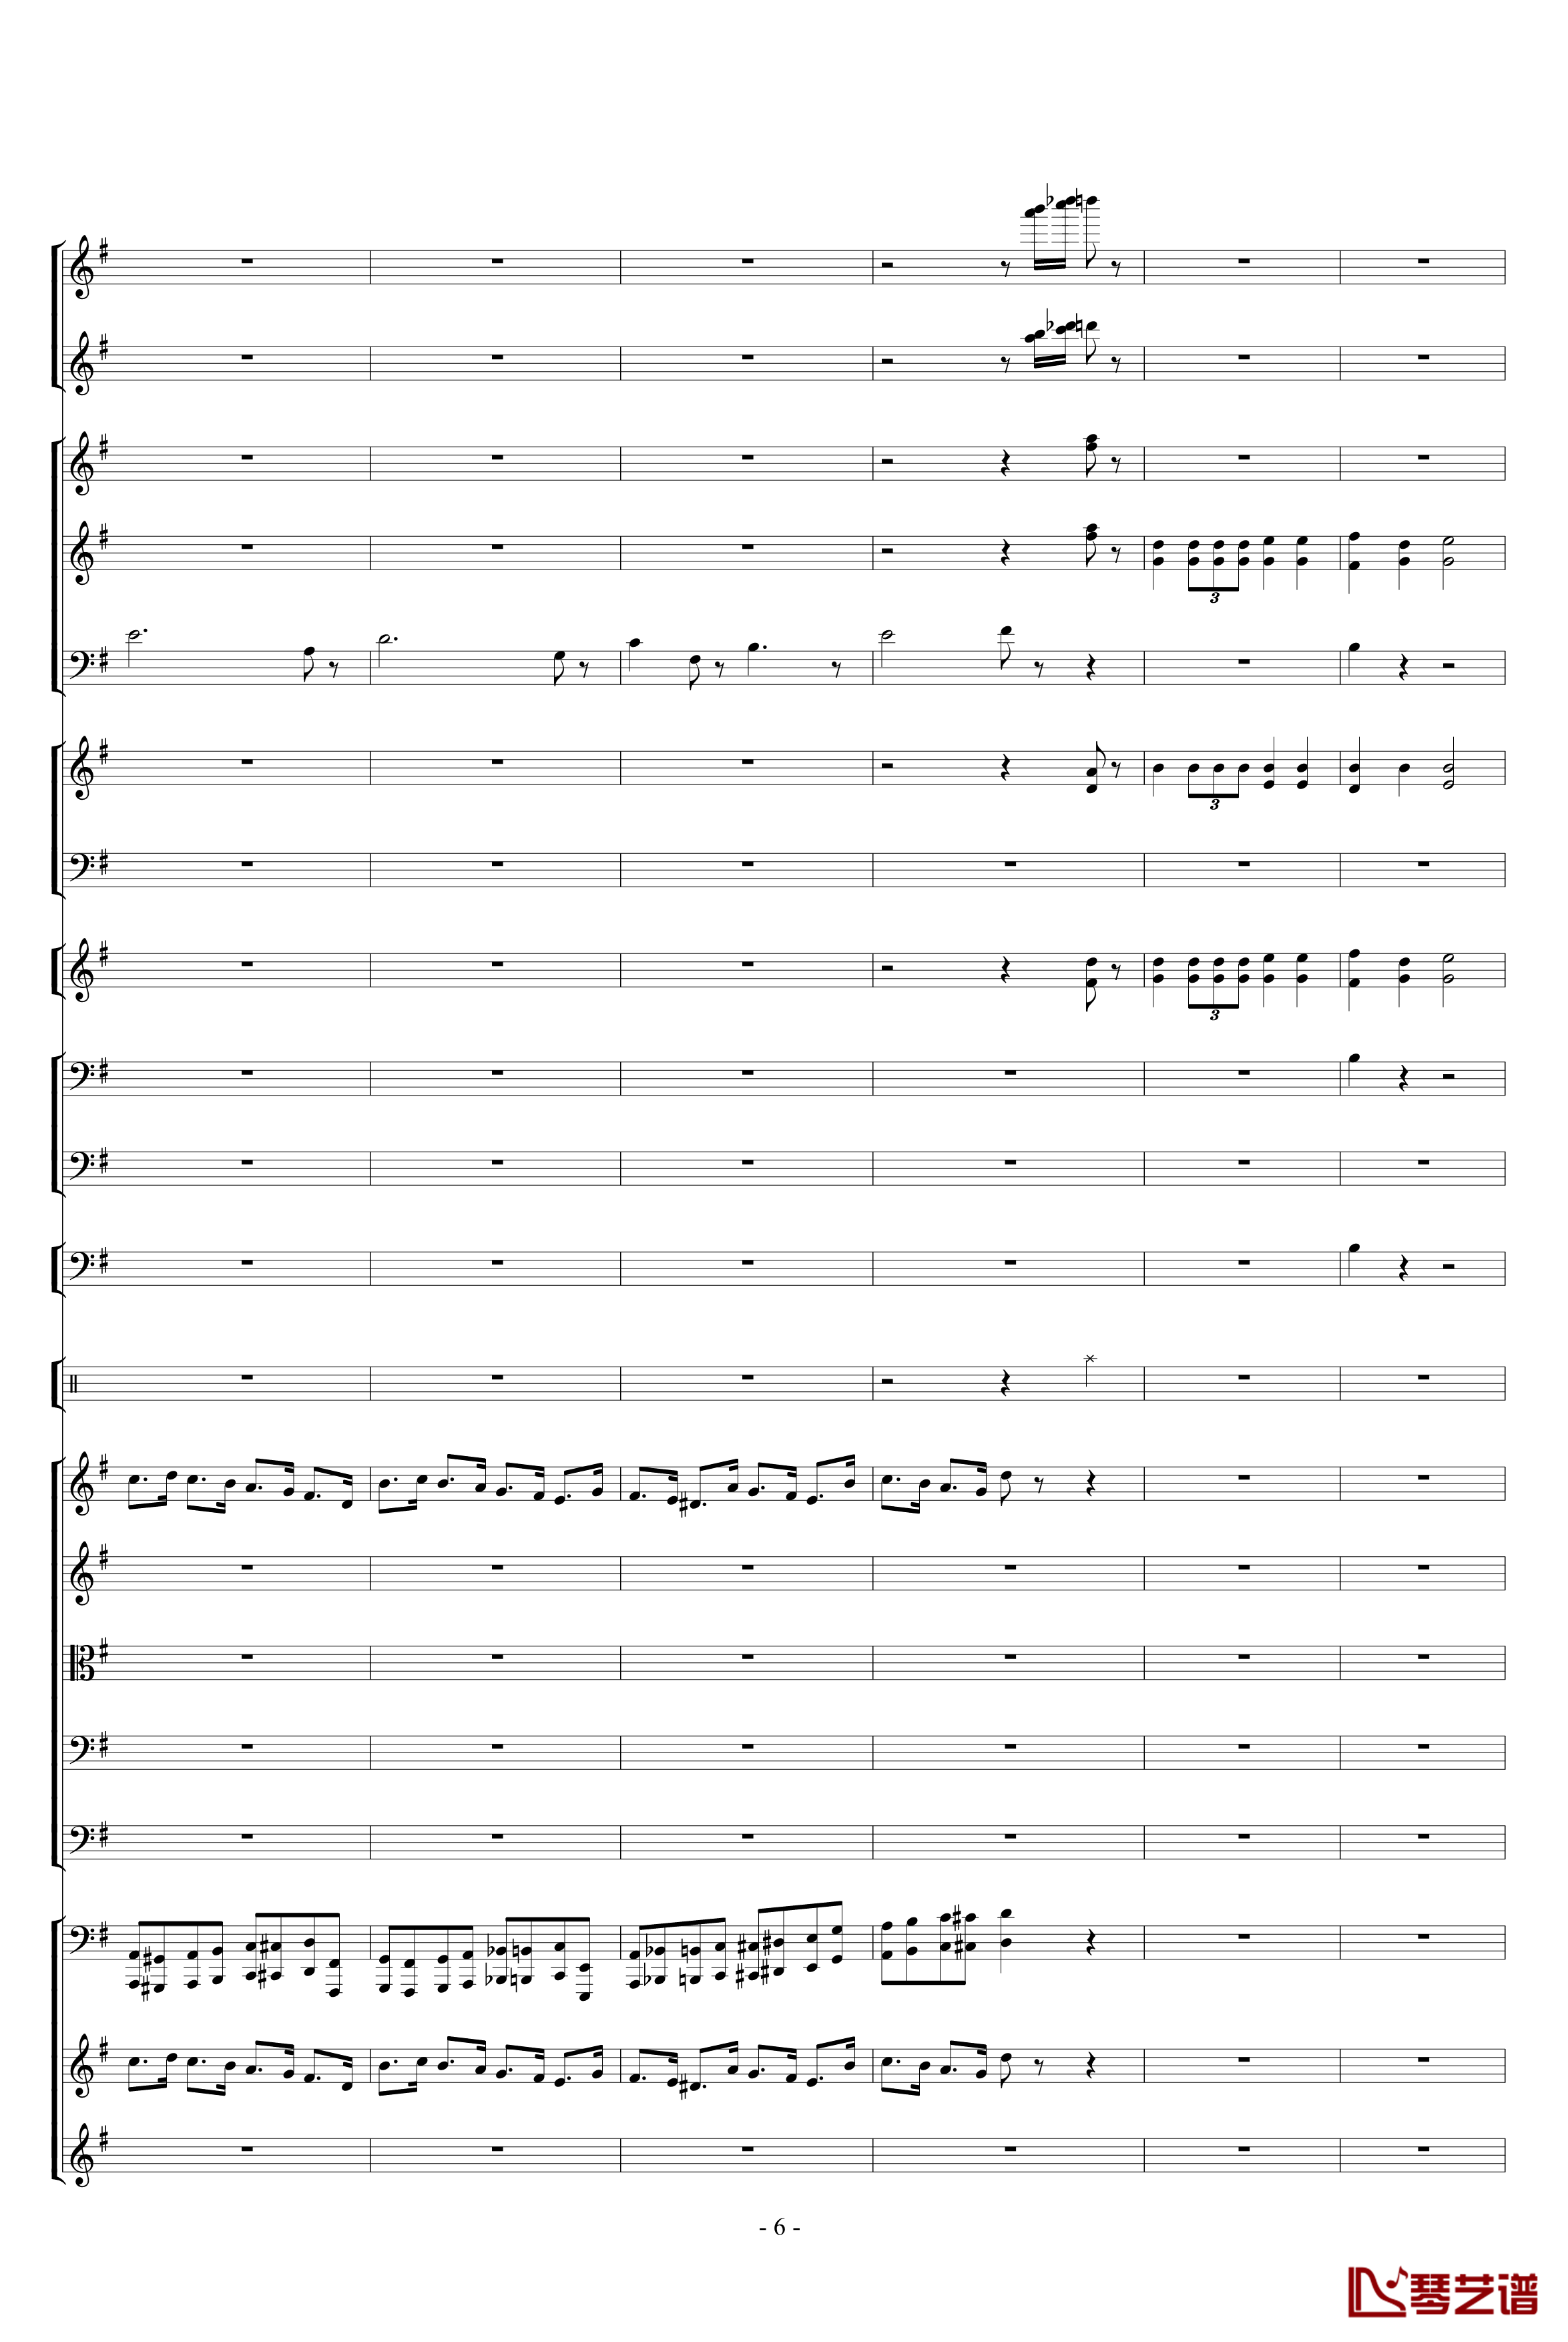 胡桃夹子组曲之进行曲钢琴谱-柴科夫斯基-Peter Ilyich Tchaikovsky6